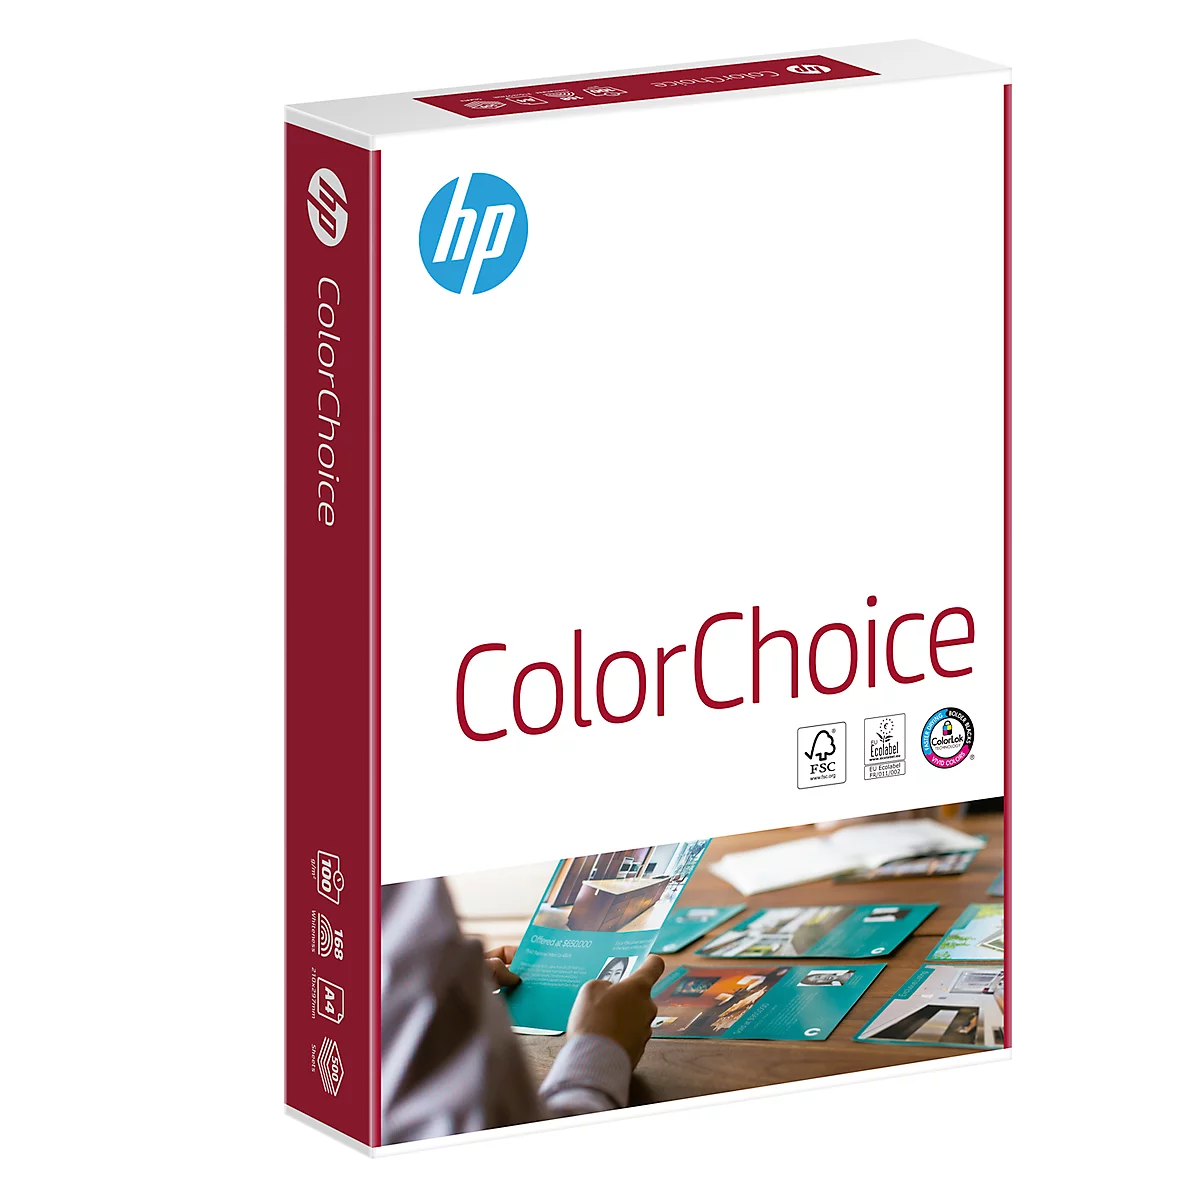 Kopierpapier Hewlett Packard ColorChoice, DIN A4, 100 g/m², hochweiß, 1 Karton = 5 x 500 Blatt